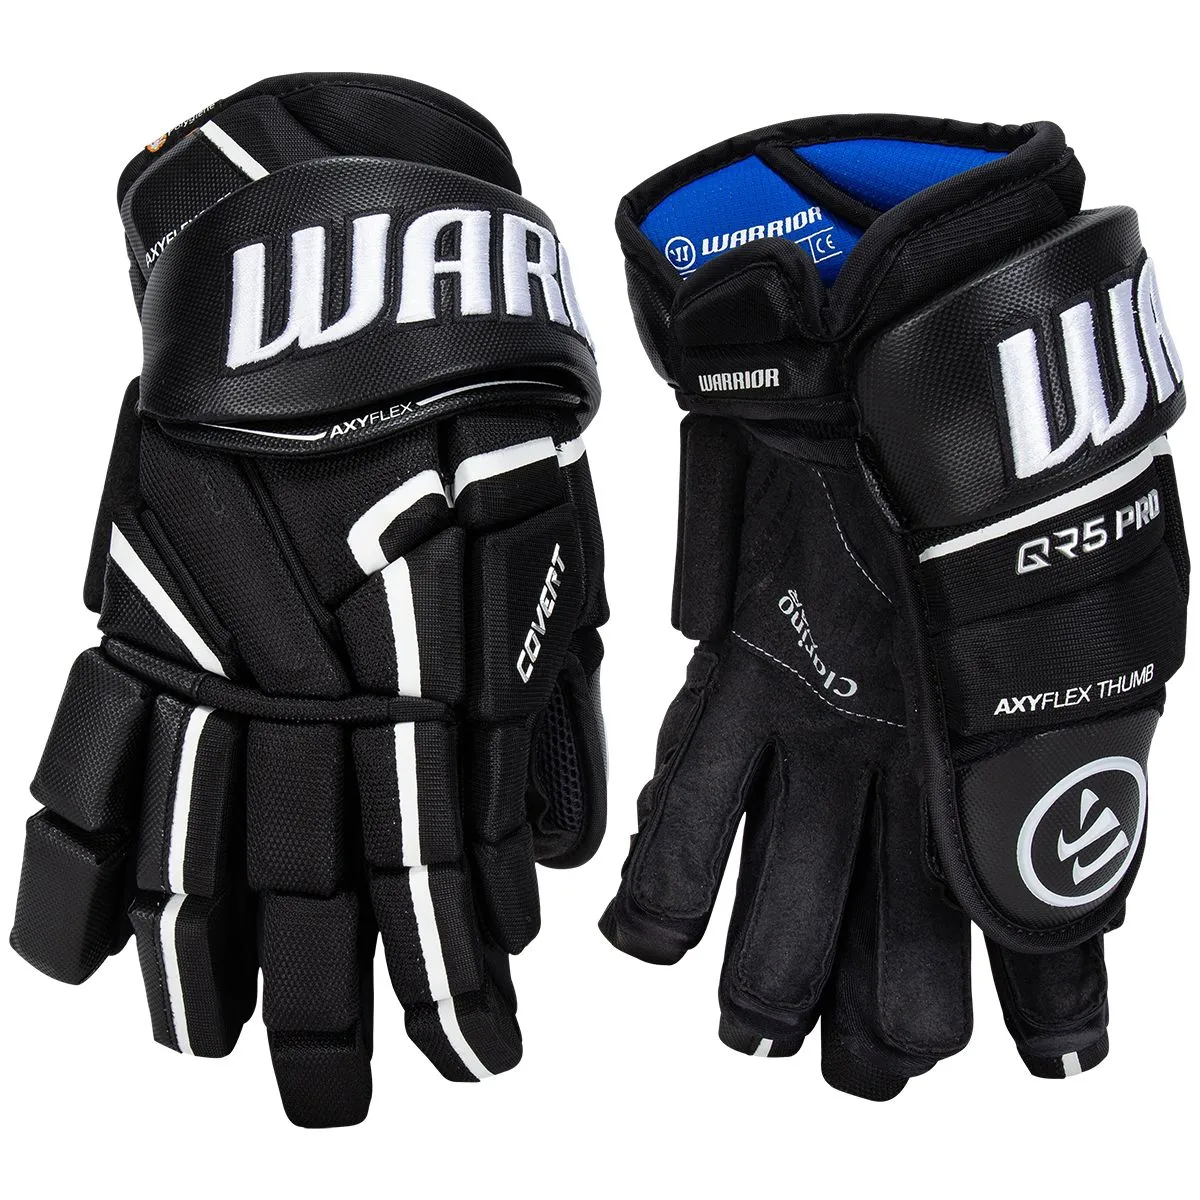 WARRIOR Covert QR5 Pro Senior Ice Hockey Gloves